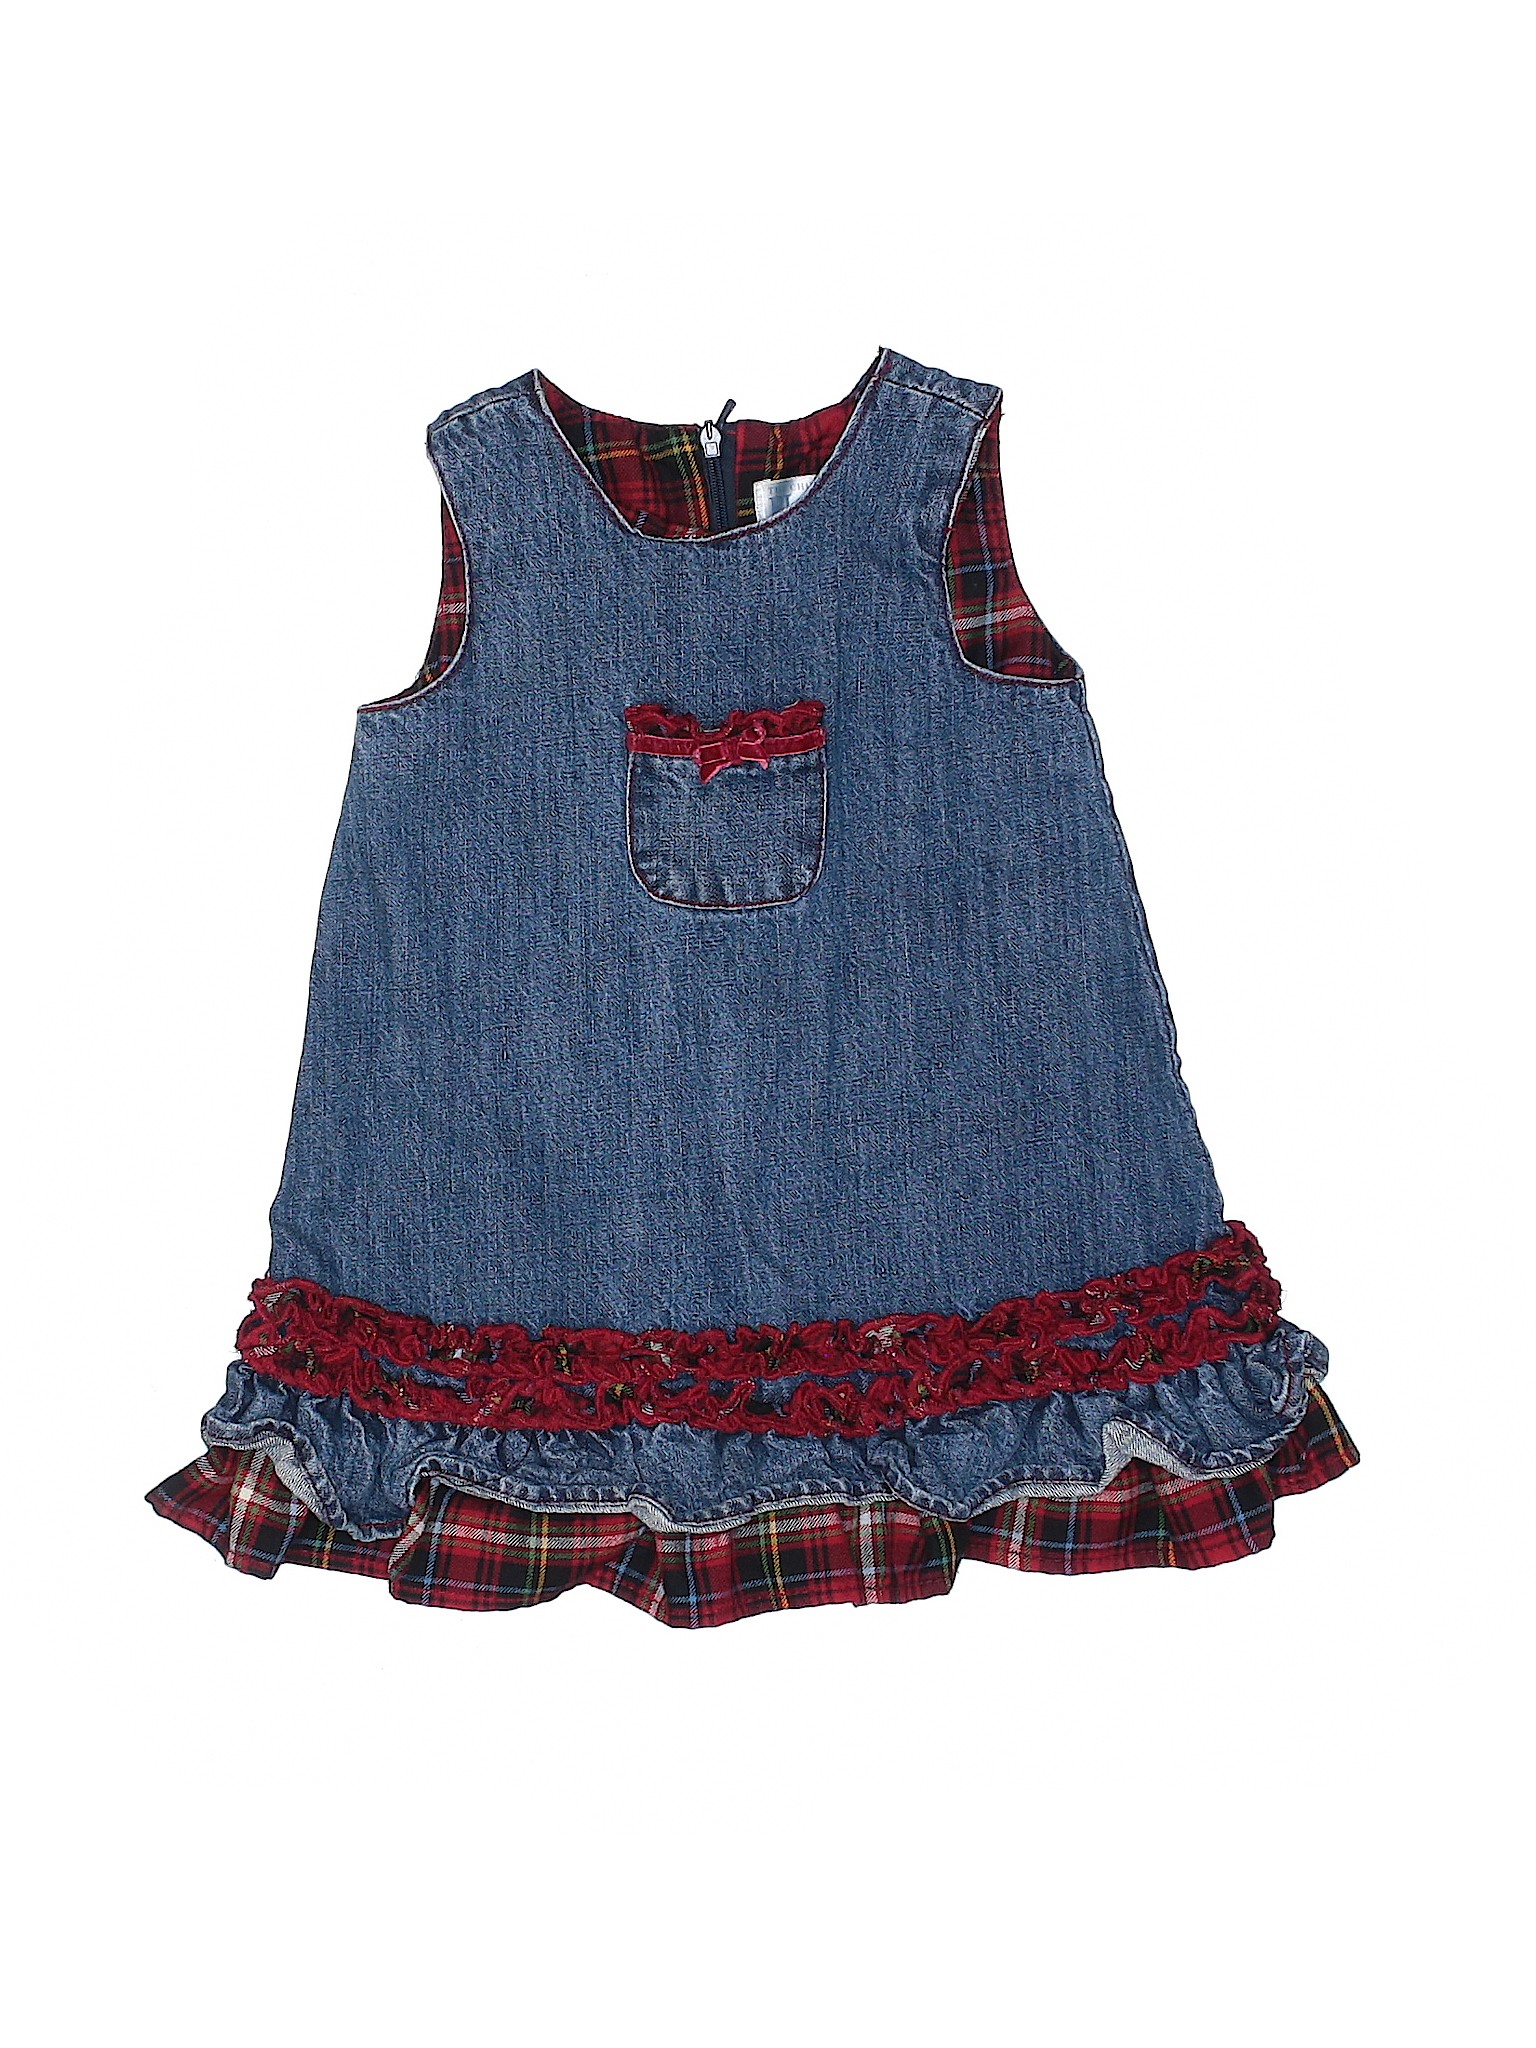 Carter's Girls Blue Dress 18 Months | eBay